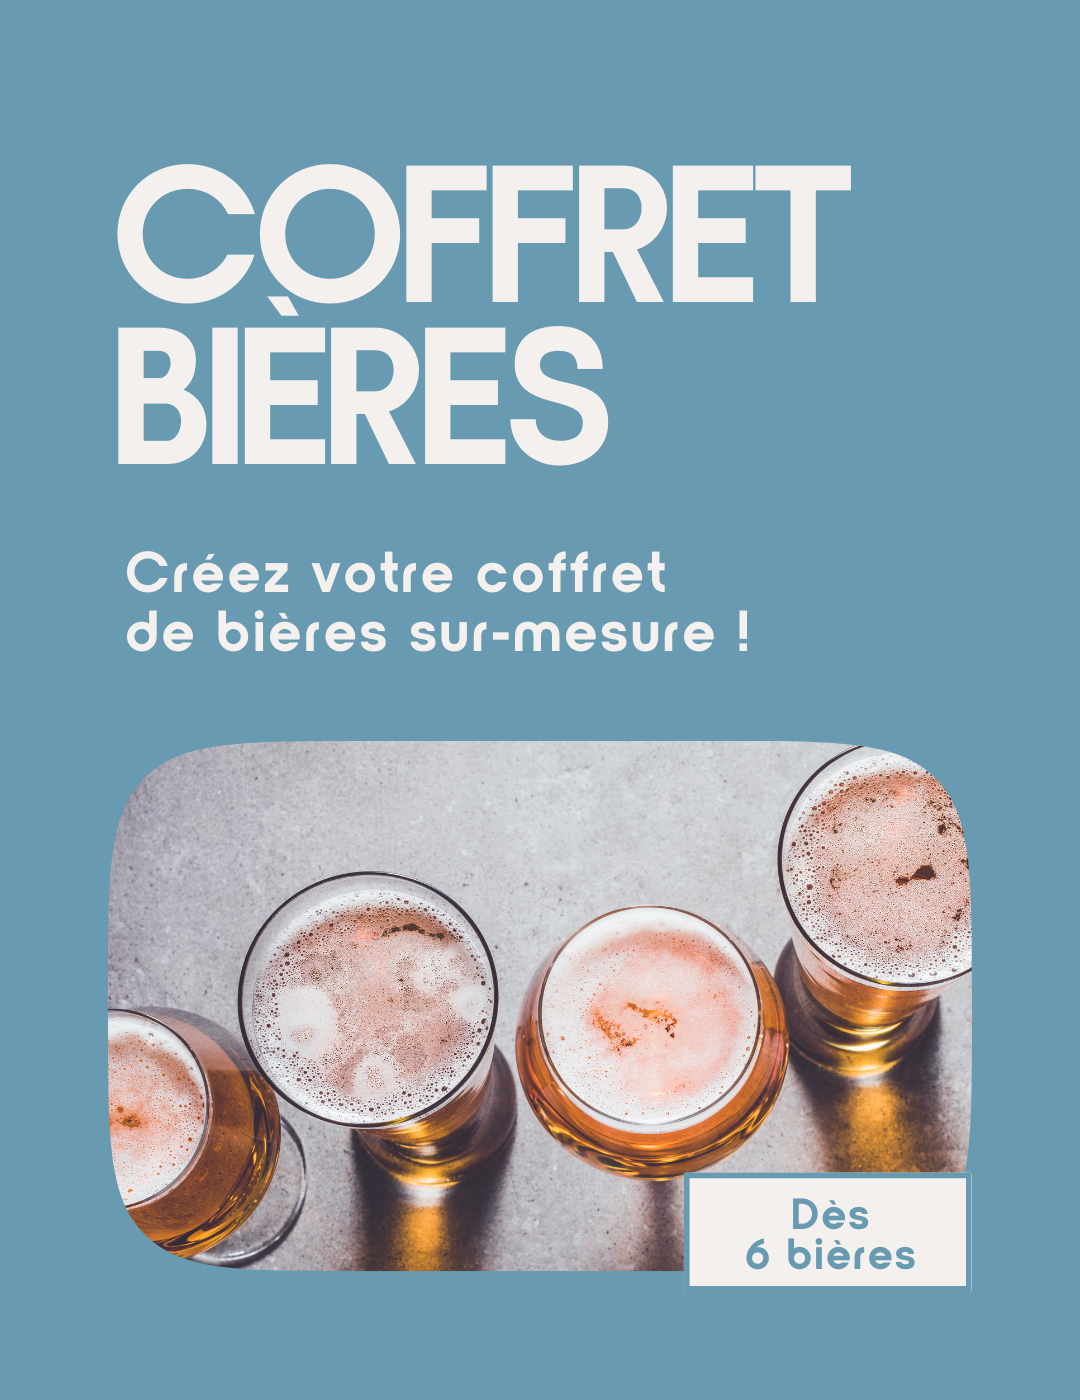 COFFRET DE BIÈRES SANS ALCOOL  DRY JANUARY – Laplanteduloup